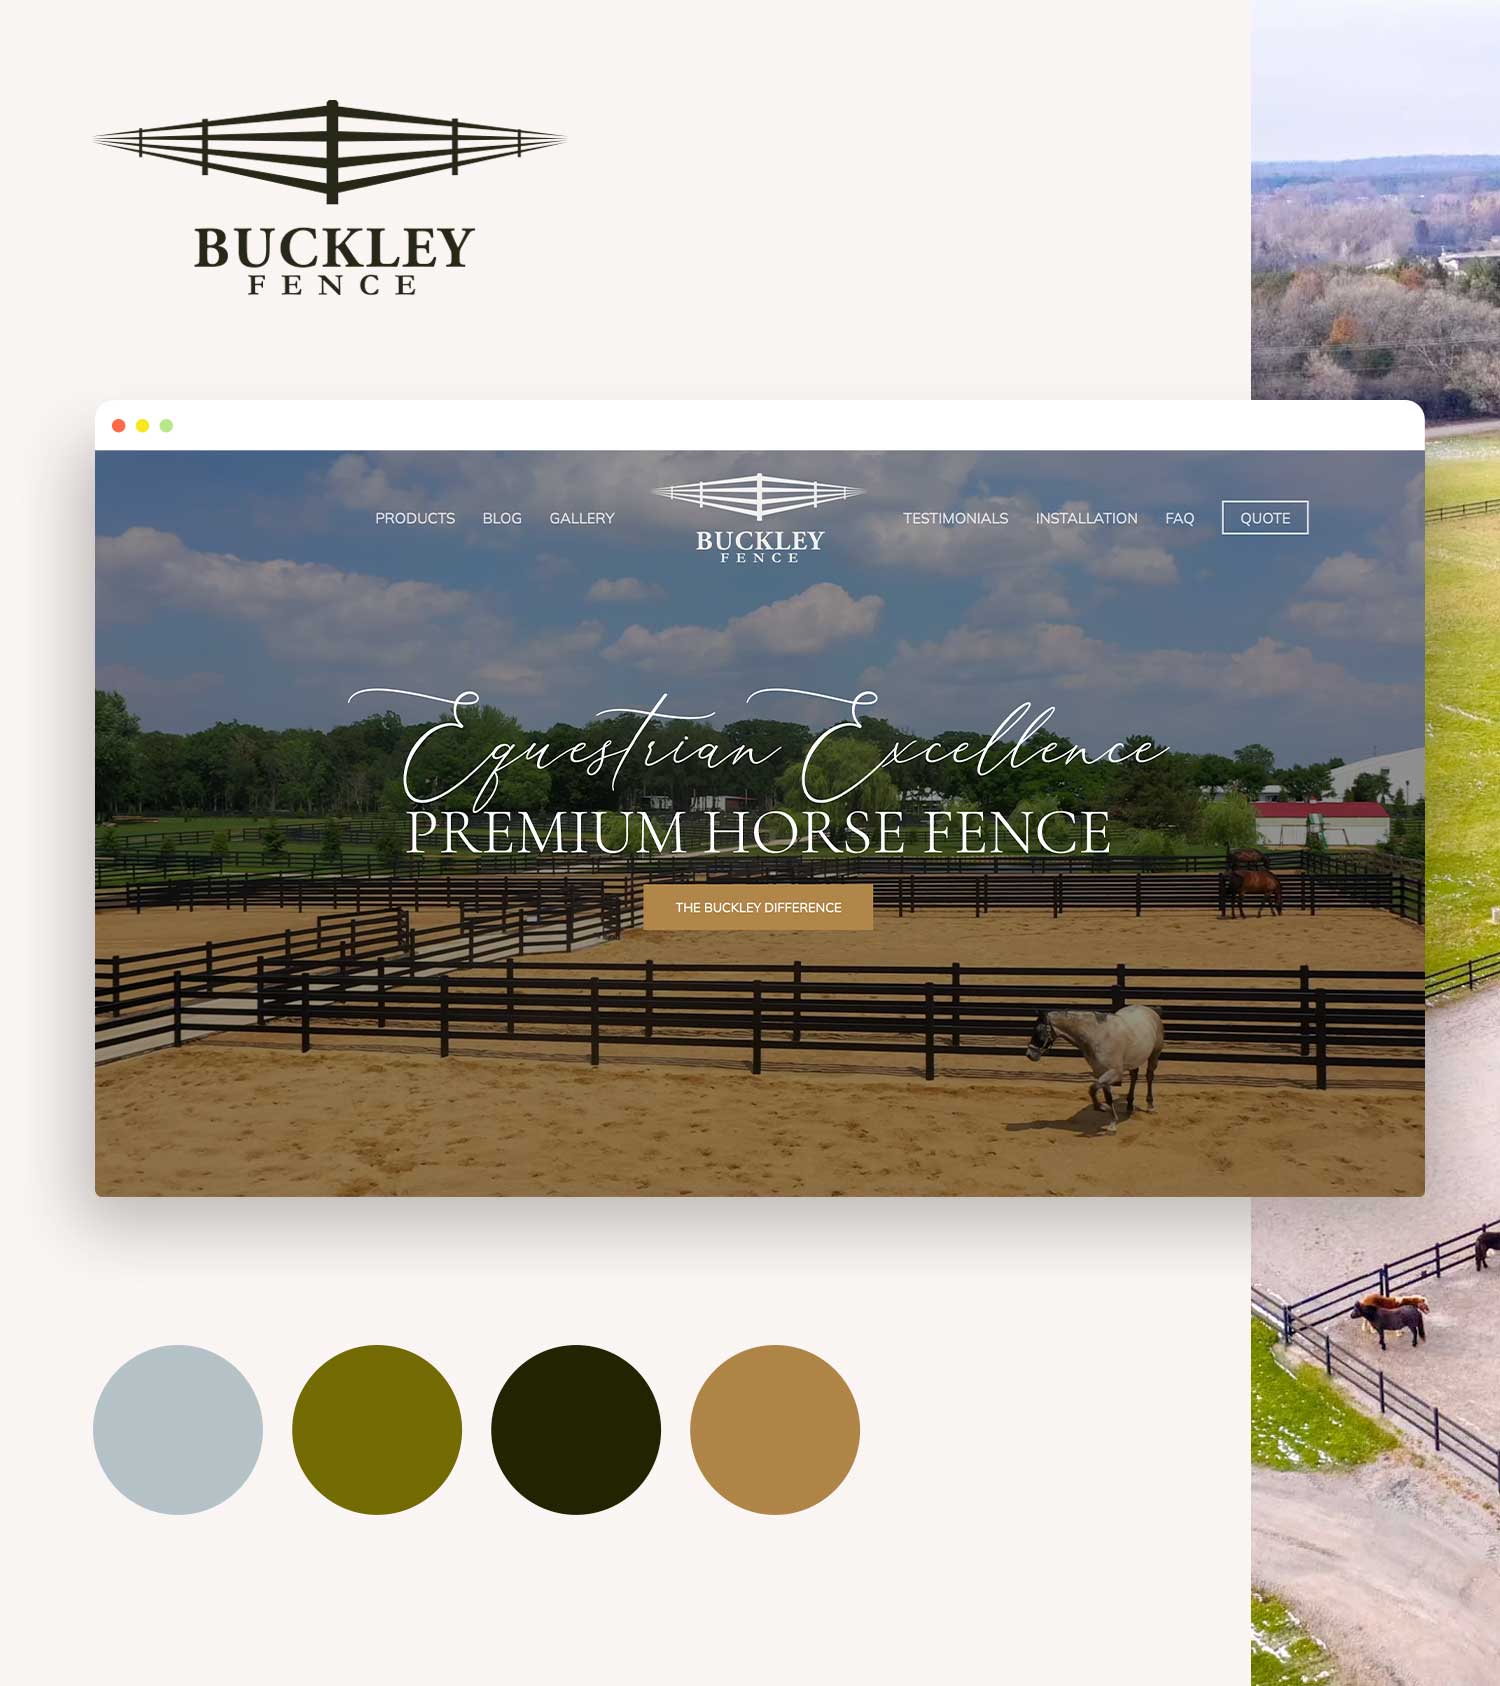 Buckley Fence Website Design and Branding